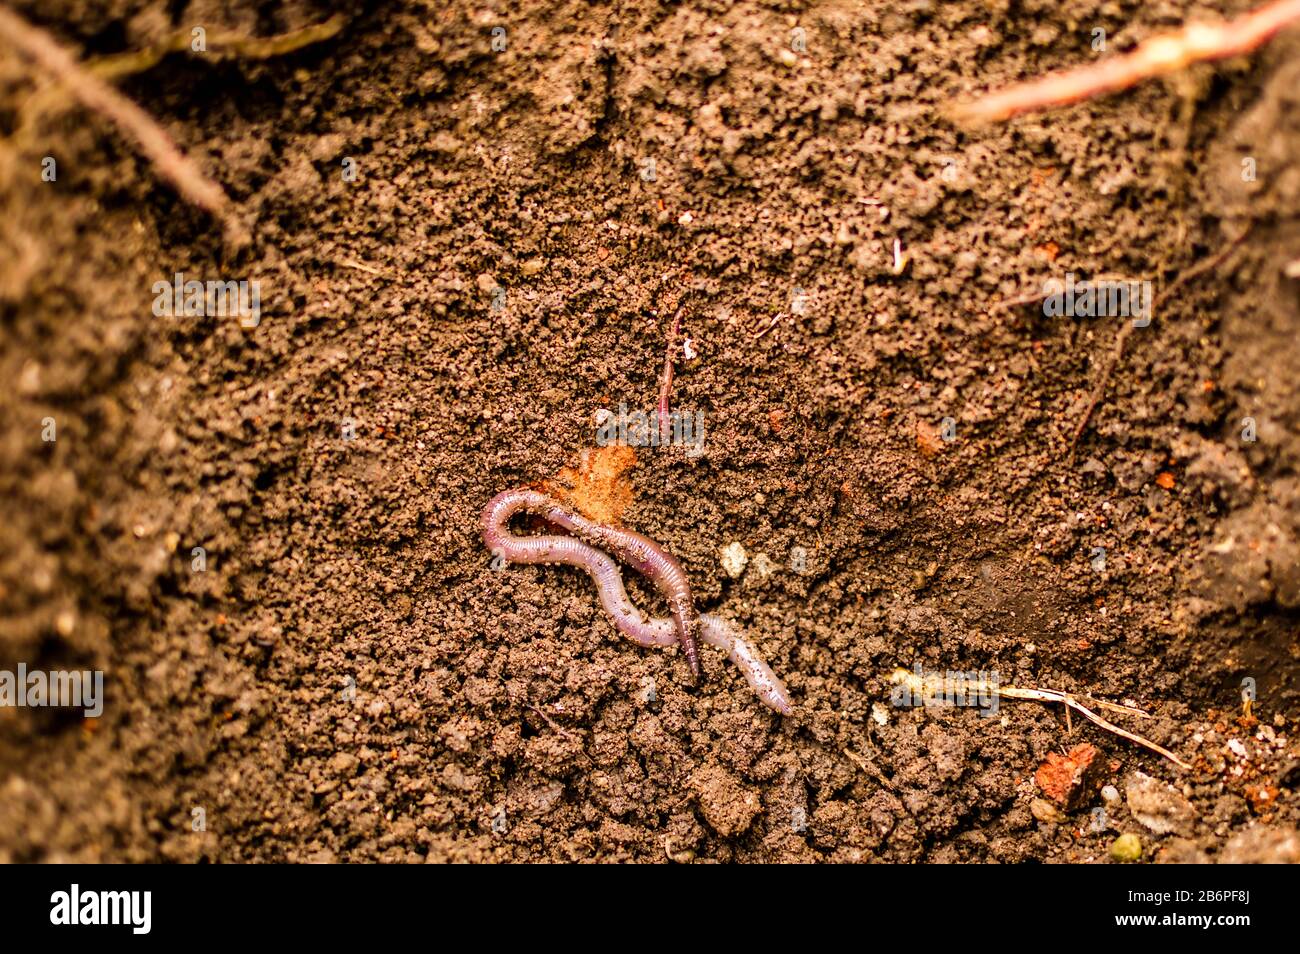 Ein Wurm beginnt sich in den Boden zu graben, eine Nahaufnahme eines Regenwurms unter natürlichen Bedingungen Stockfoto